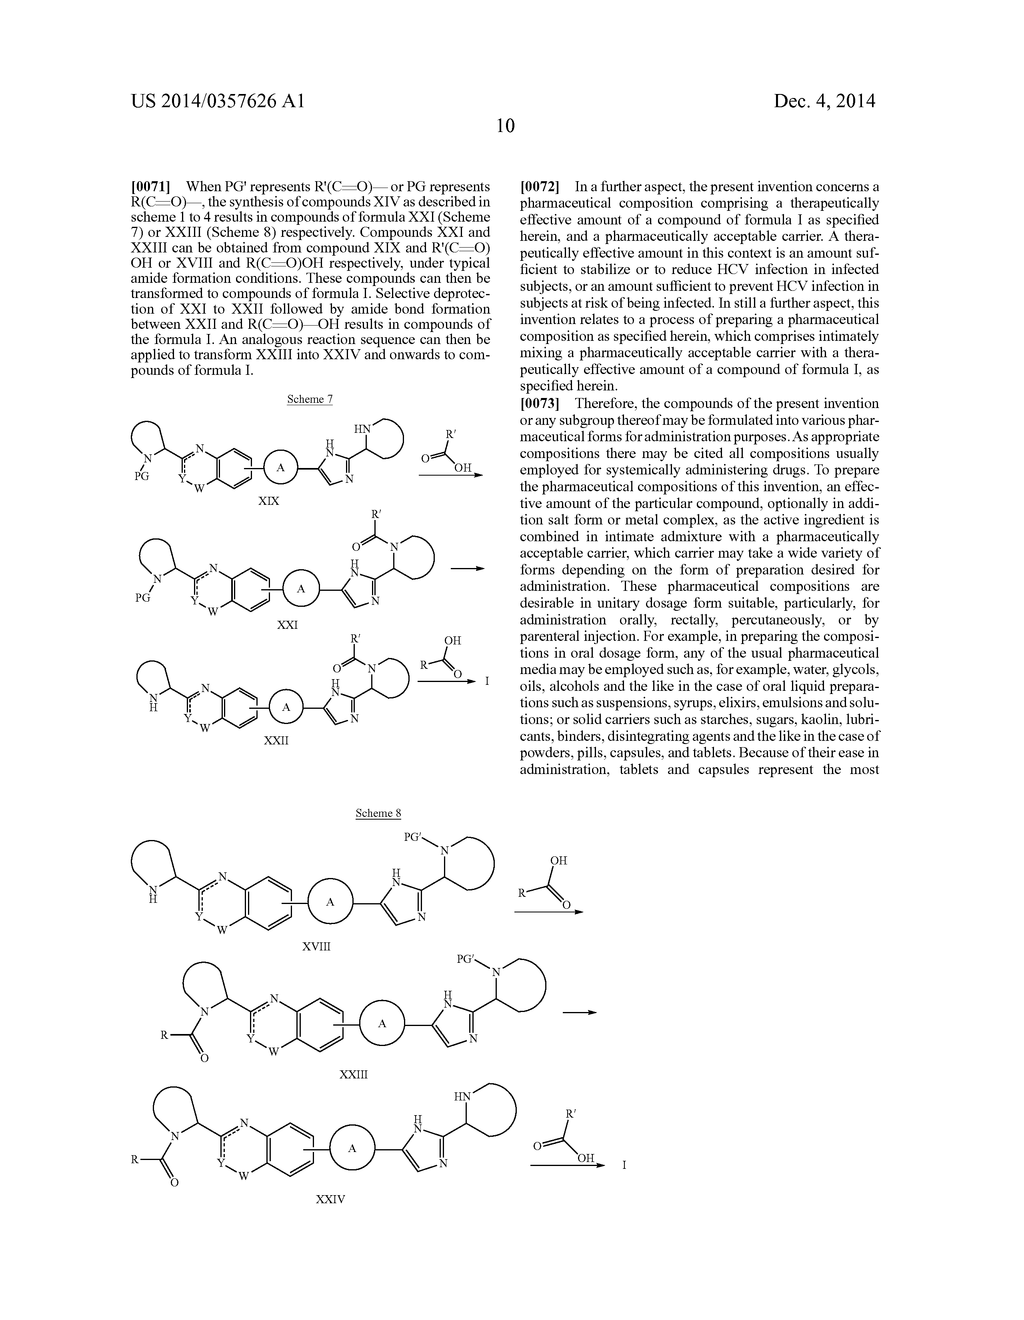 Hetero-Bicyclic Derivatives As HCV Inhibitors - diagram, schematic, and image 11